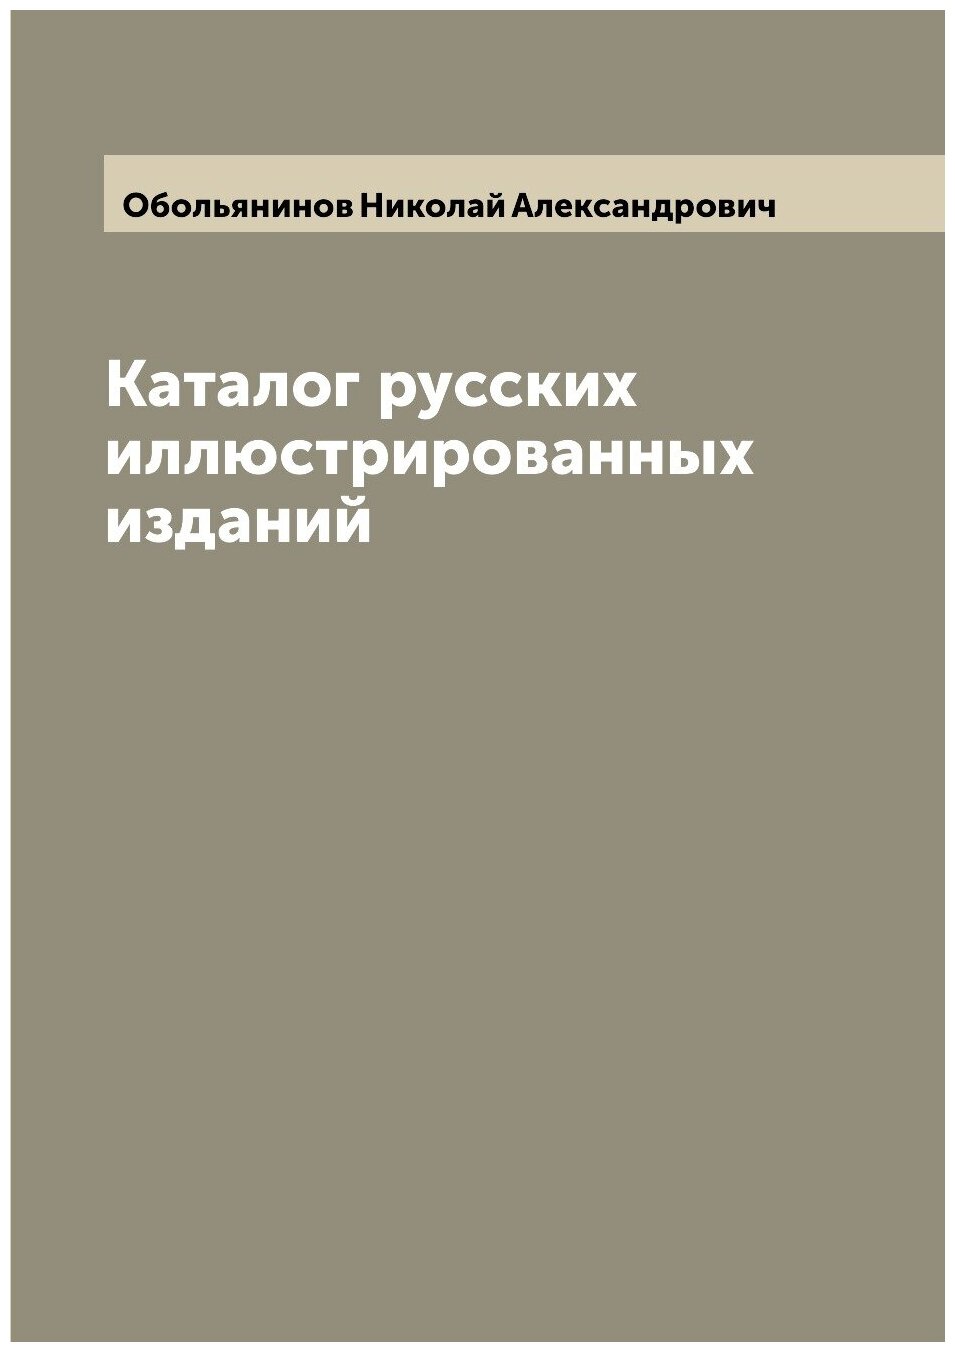 Каталог русских иллюстрированных изданий